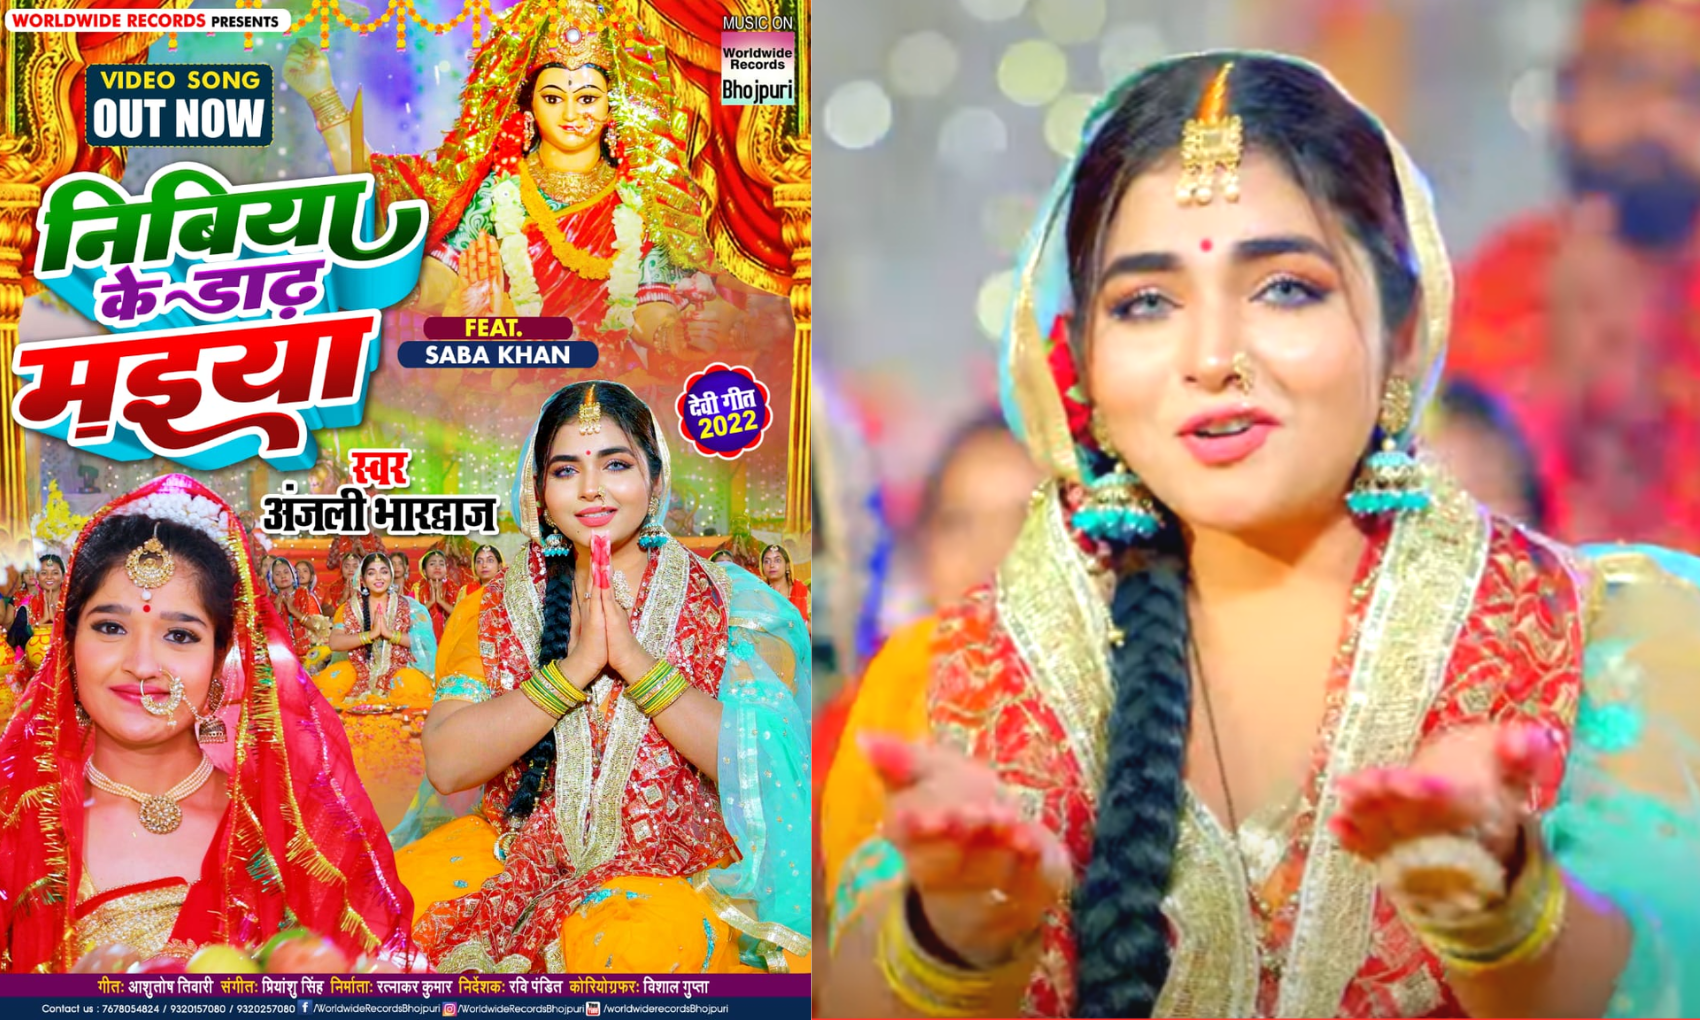 Bhojpuri: अंजलि भारद्वाज का नया गाना ‘निबिया के डाढ़ मइया’ हुआ रिलीज, सबा खान माता की भक्ति में लीन आई नजर